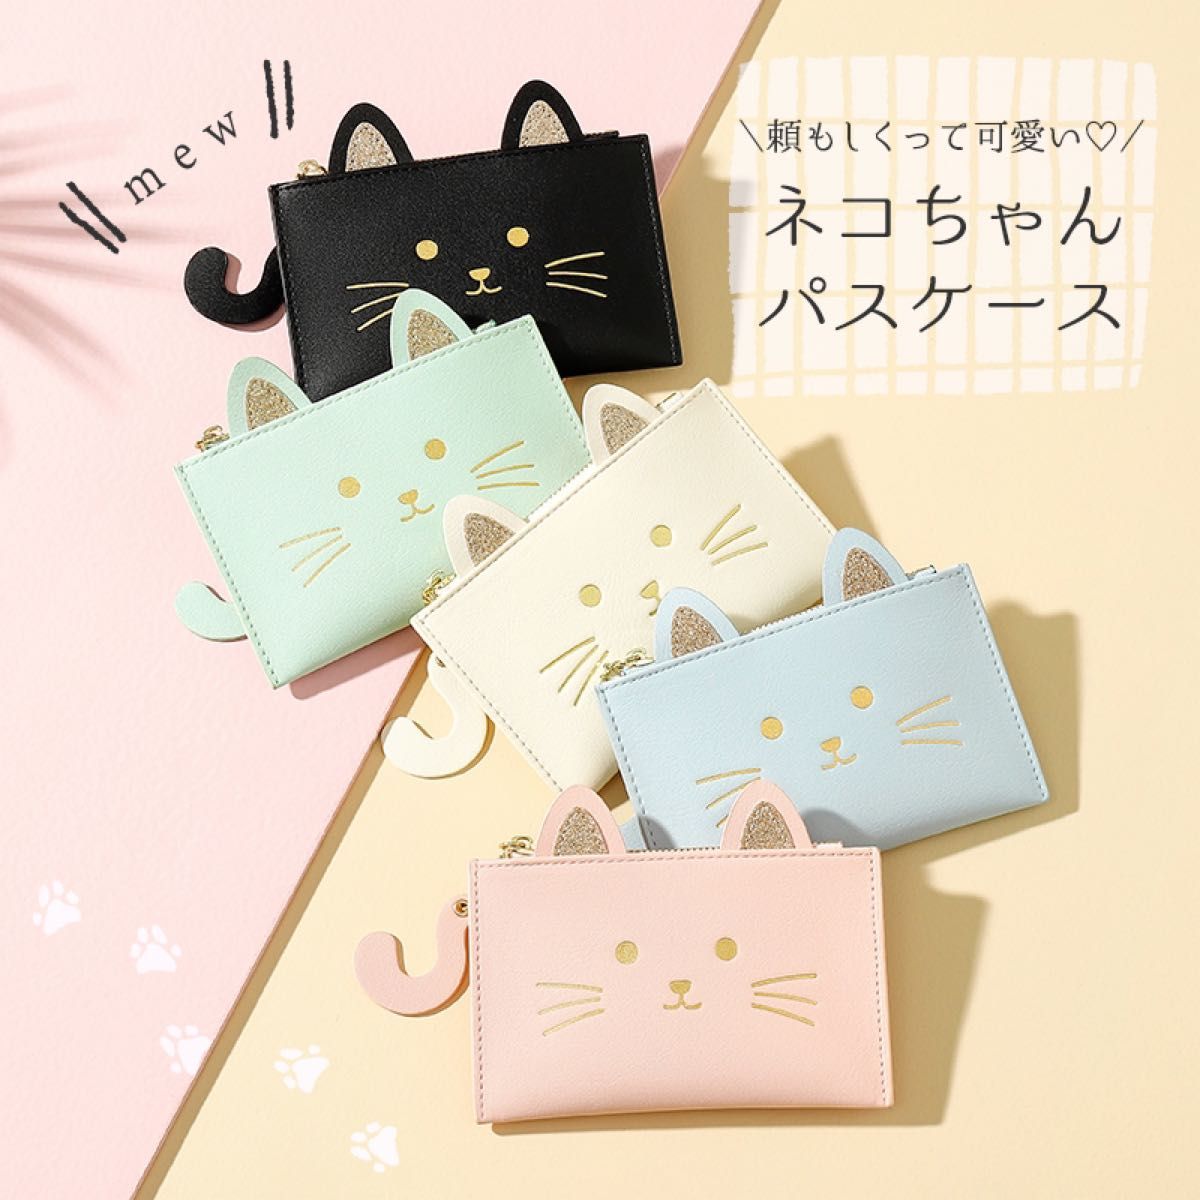 【新品】パスケース 定期入れ 白猫 ネコちゃん コインケース付き猫のミニ財布 フラグメントケース クリームイエロー